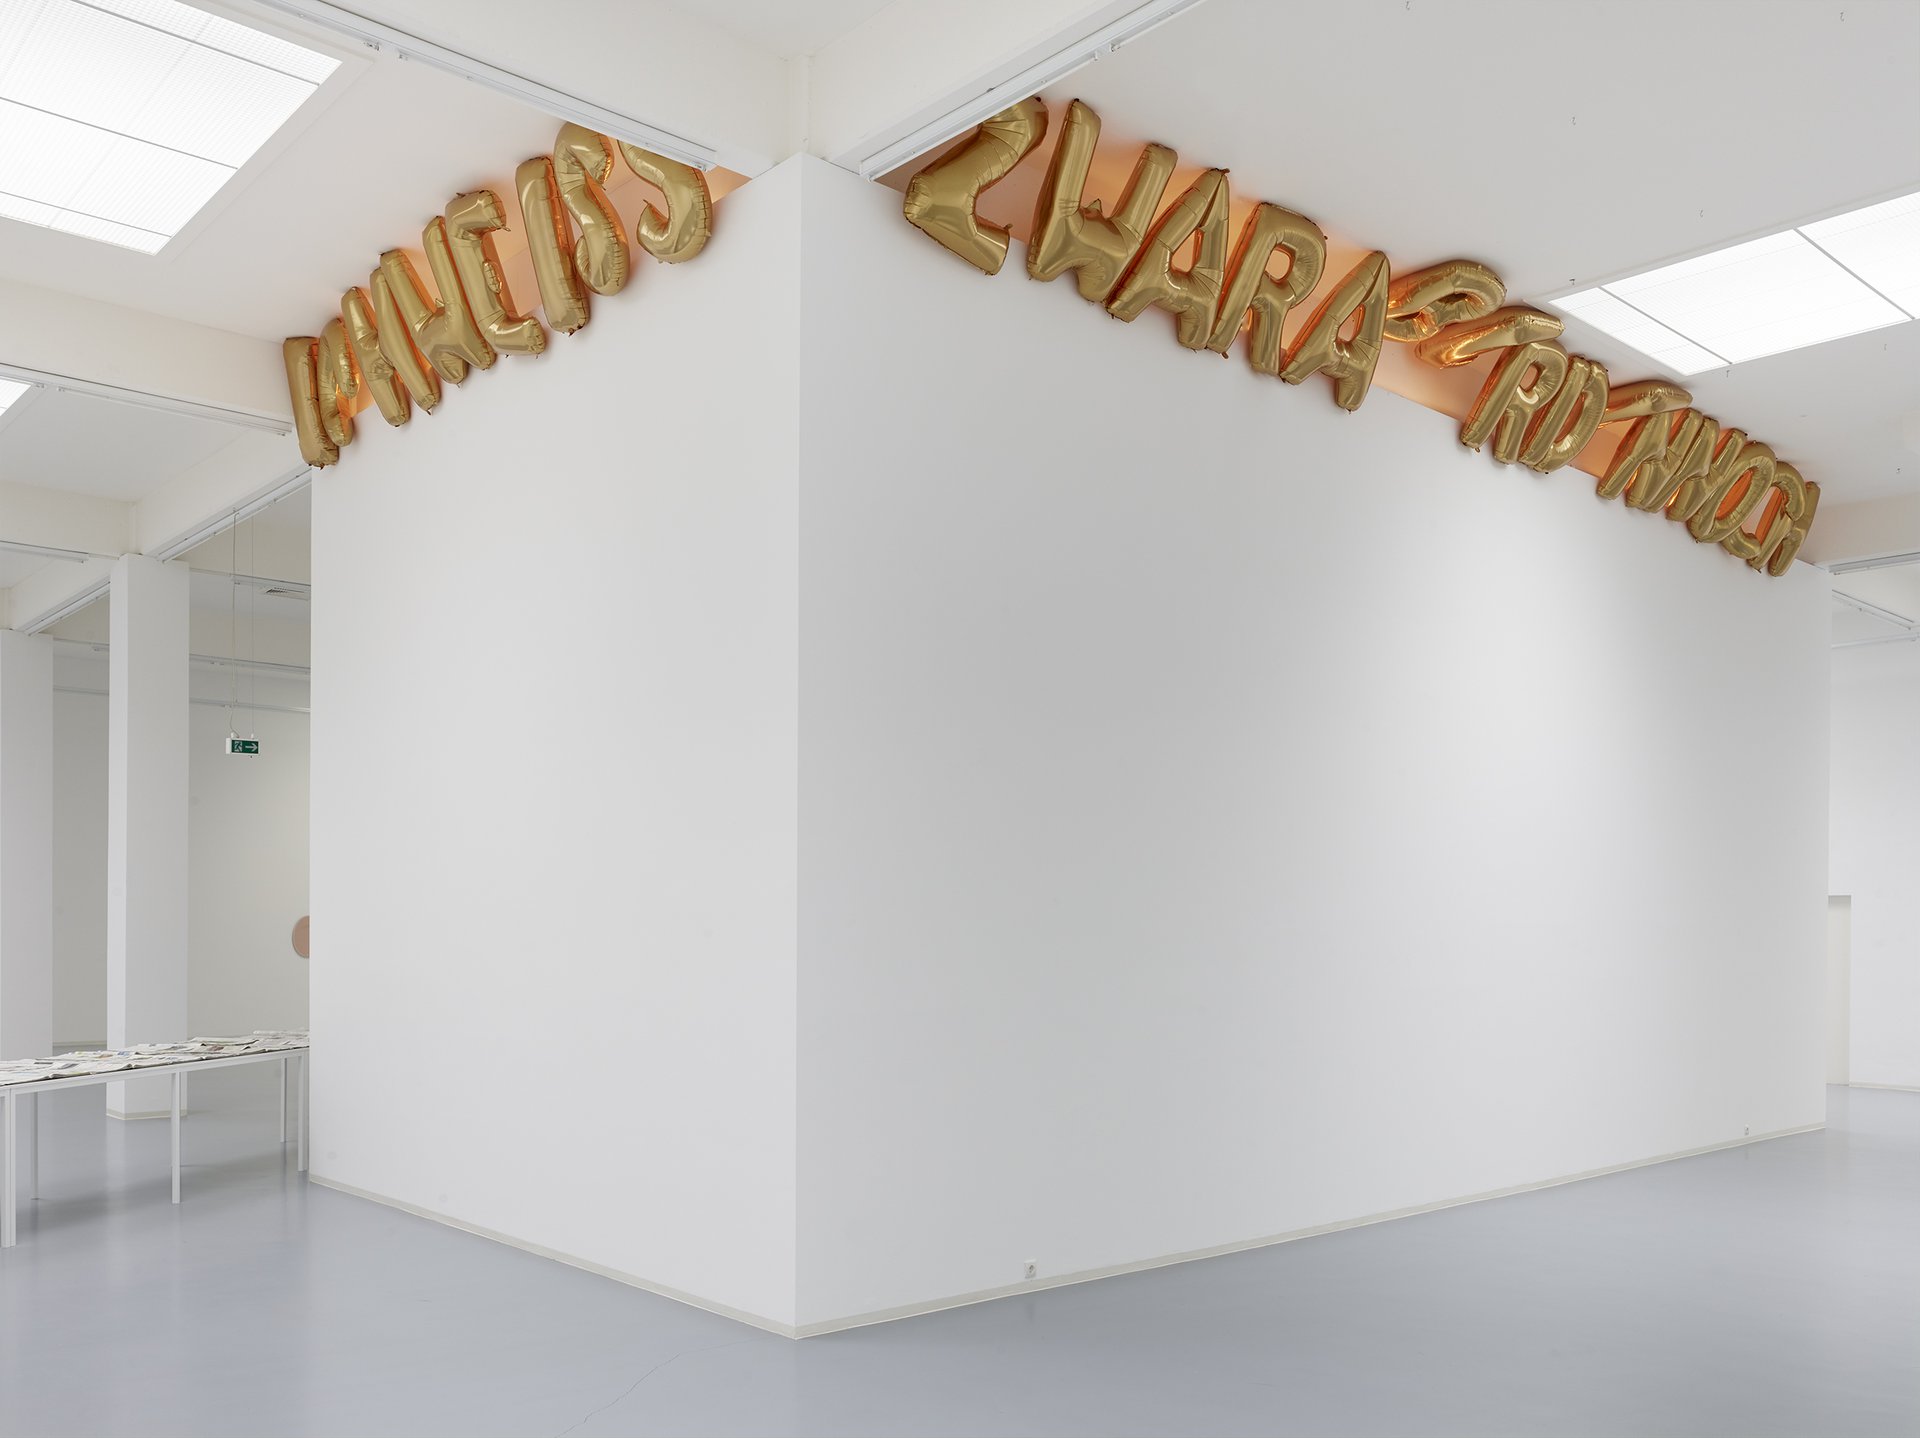 Banu Cennetoğlu, ICHWEISSZWARABERDENNOCH, Installationsansicht, 2015, Bonner Kunstverein. Courtesy die Künstlerin und Rodeo, London. Foto: Simon Vogel